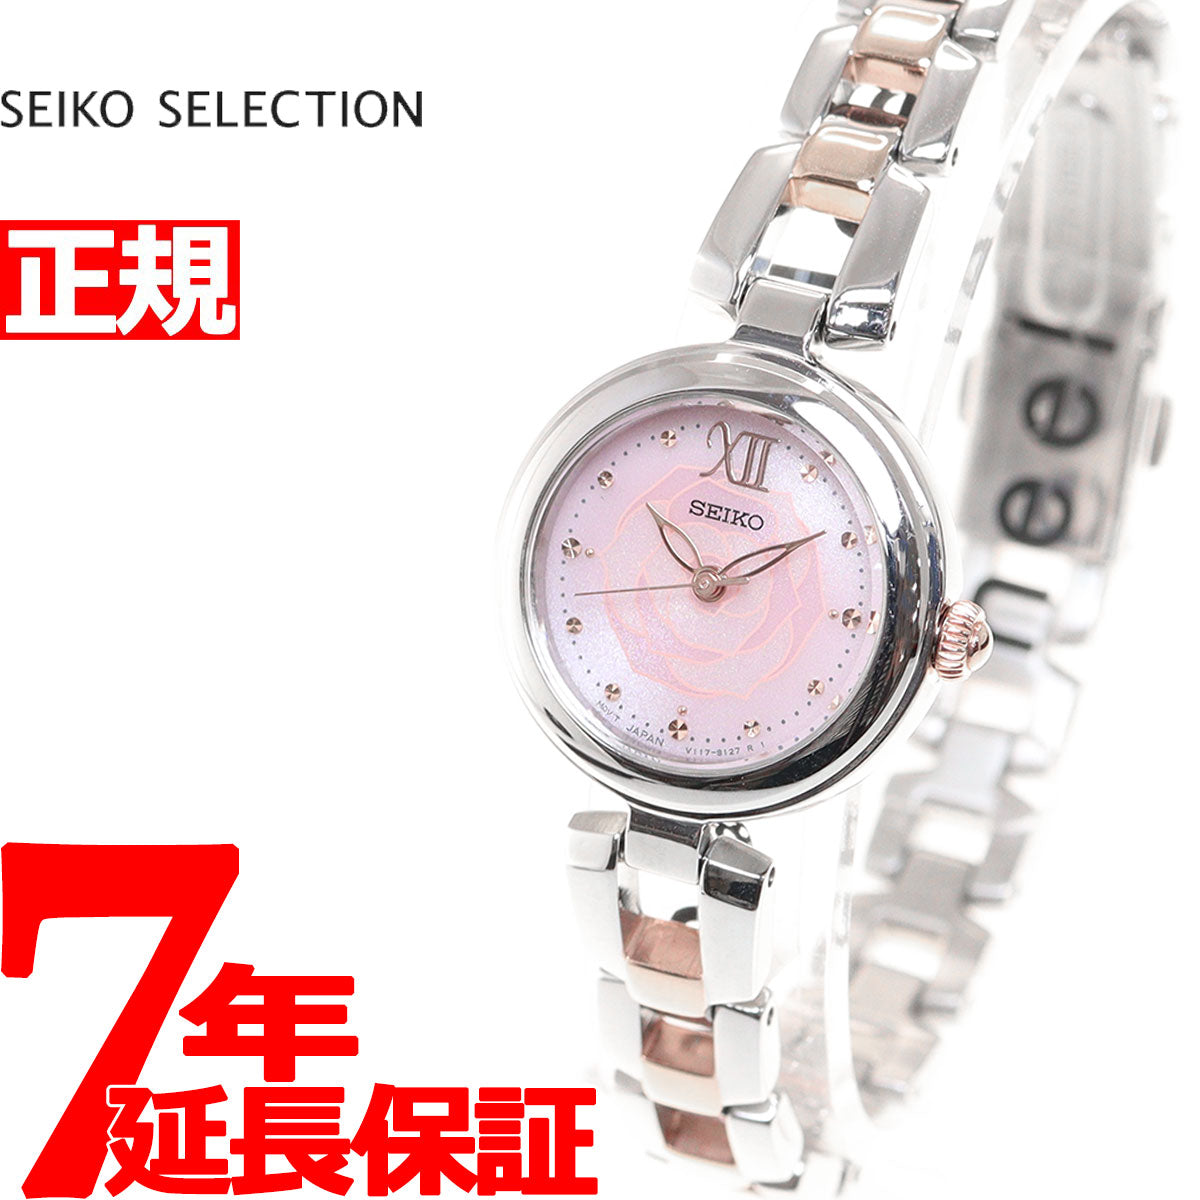 セイコー セレクション フラワーモチーフモデル デイジー SWFA193 レディース 腕時計 ソーラー ピンク シルバー ピンクゴールド SEIKO  SELECTION